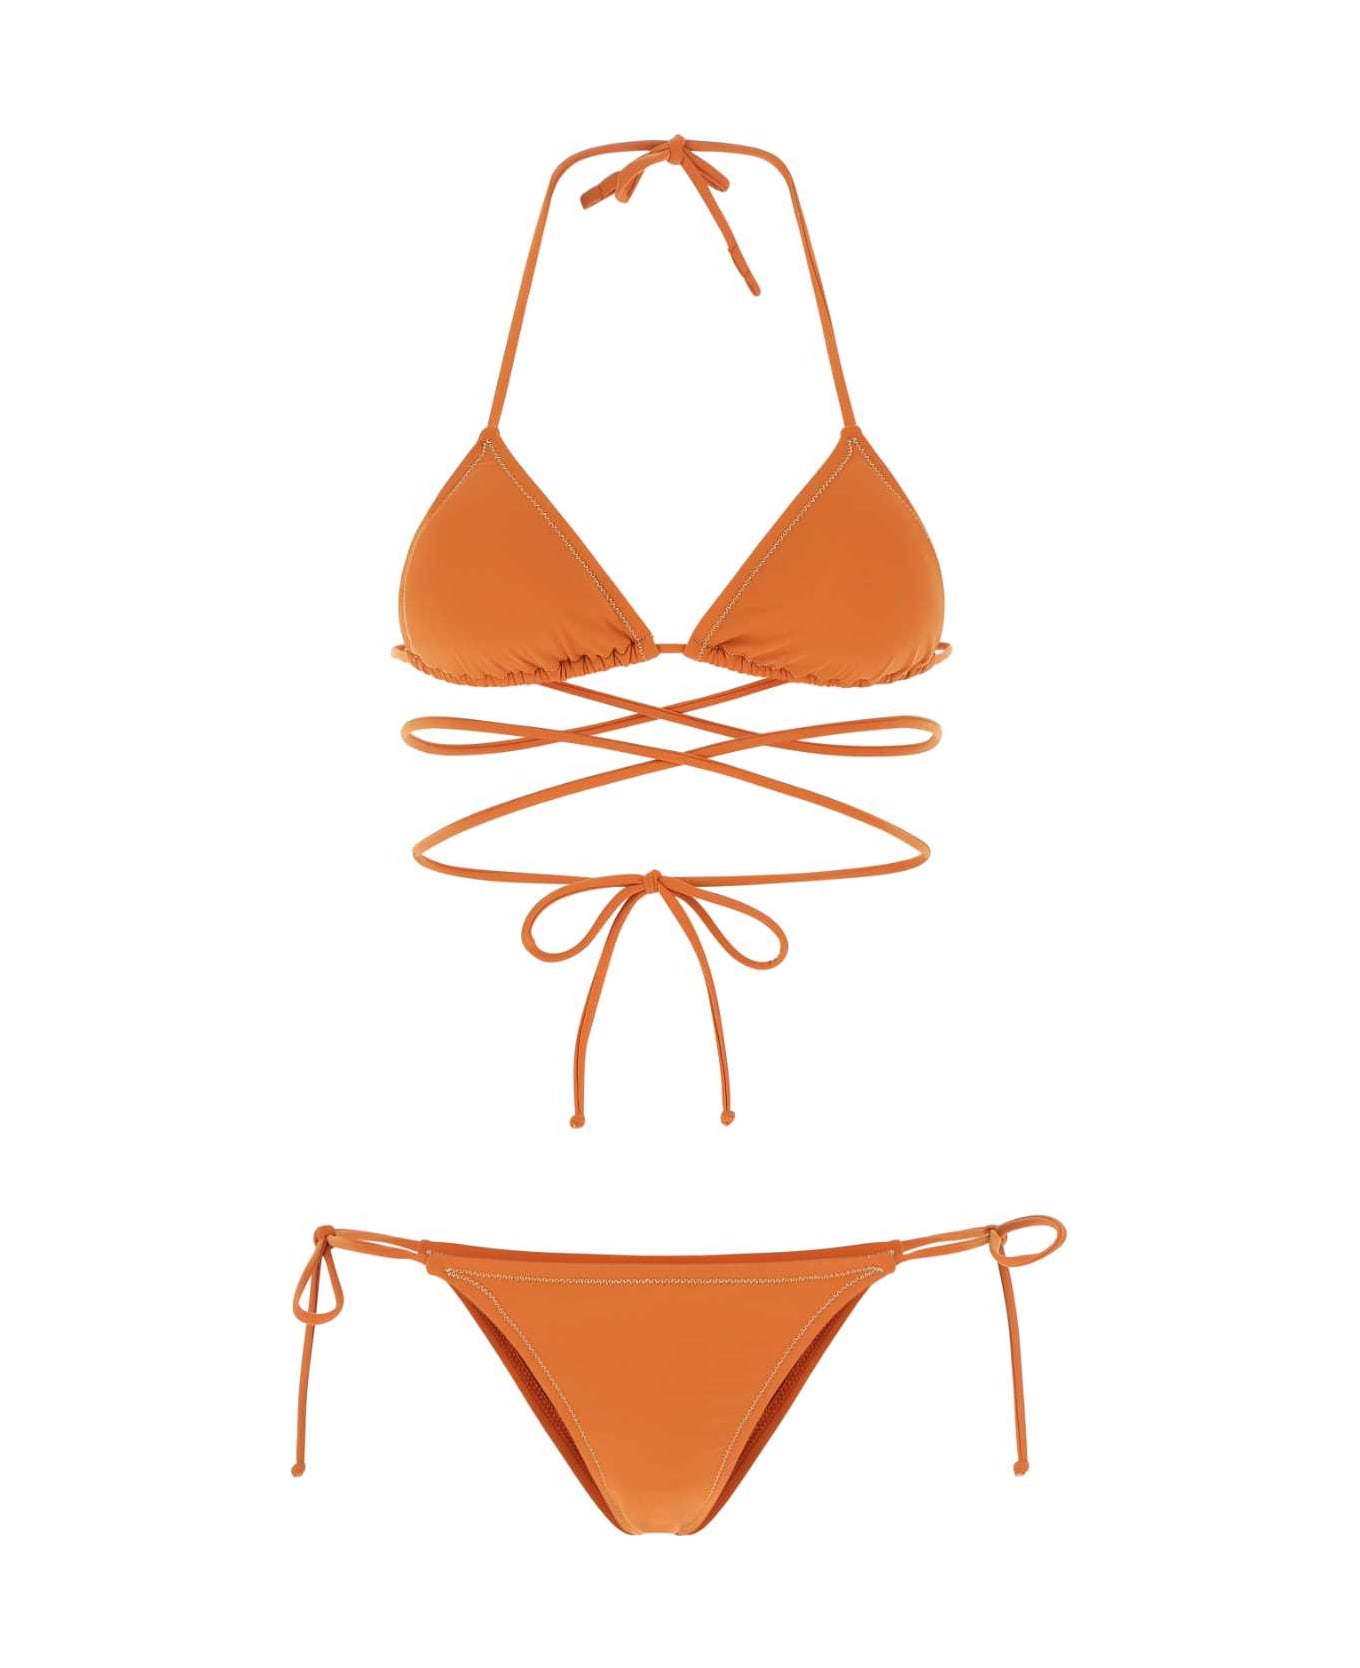 Reina Olga Orange Stretch Nylon Miami Bikini - BRICK